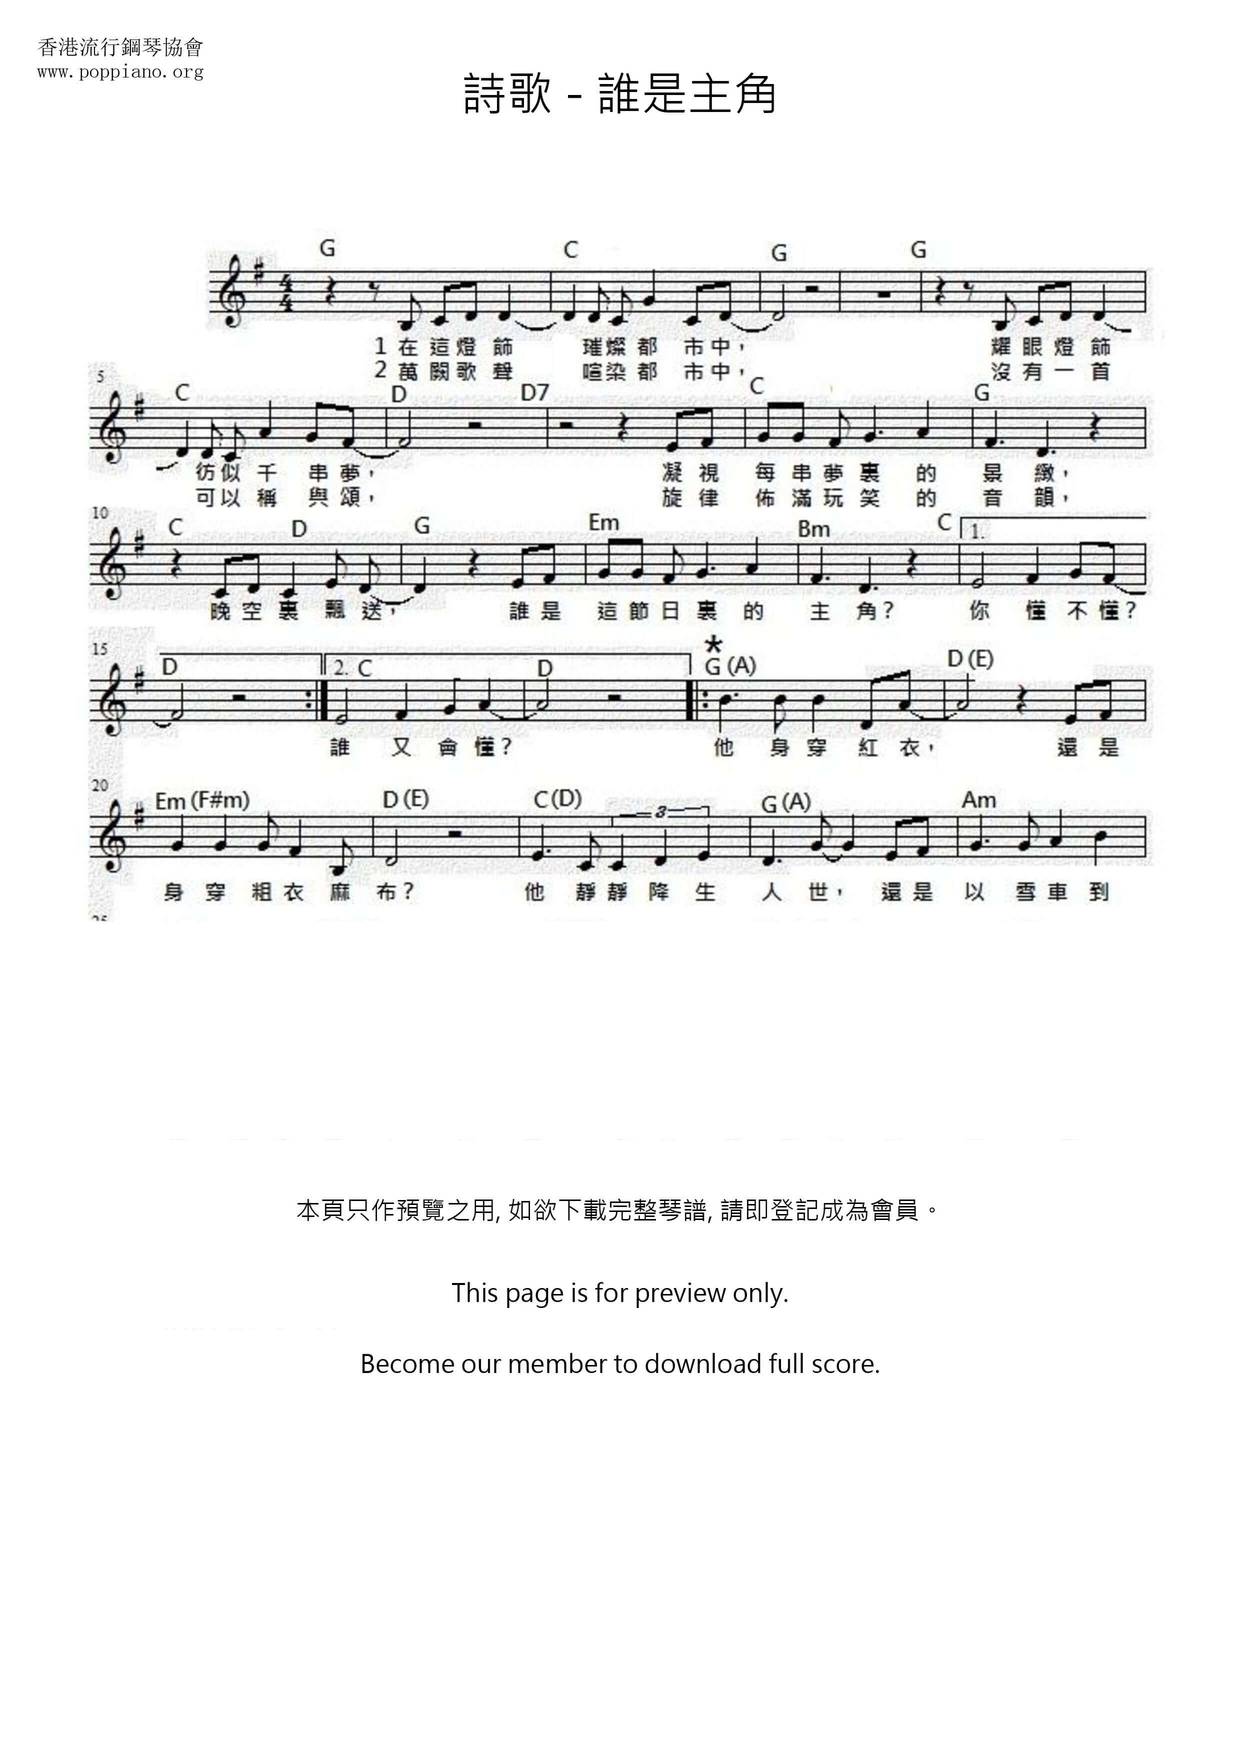 詩歌 誰是主角琴譜 五線譜pdf 香港流行鋼琴協會琴譜下載